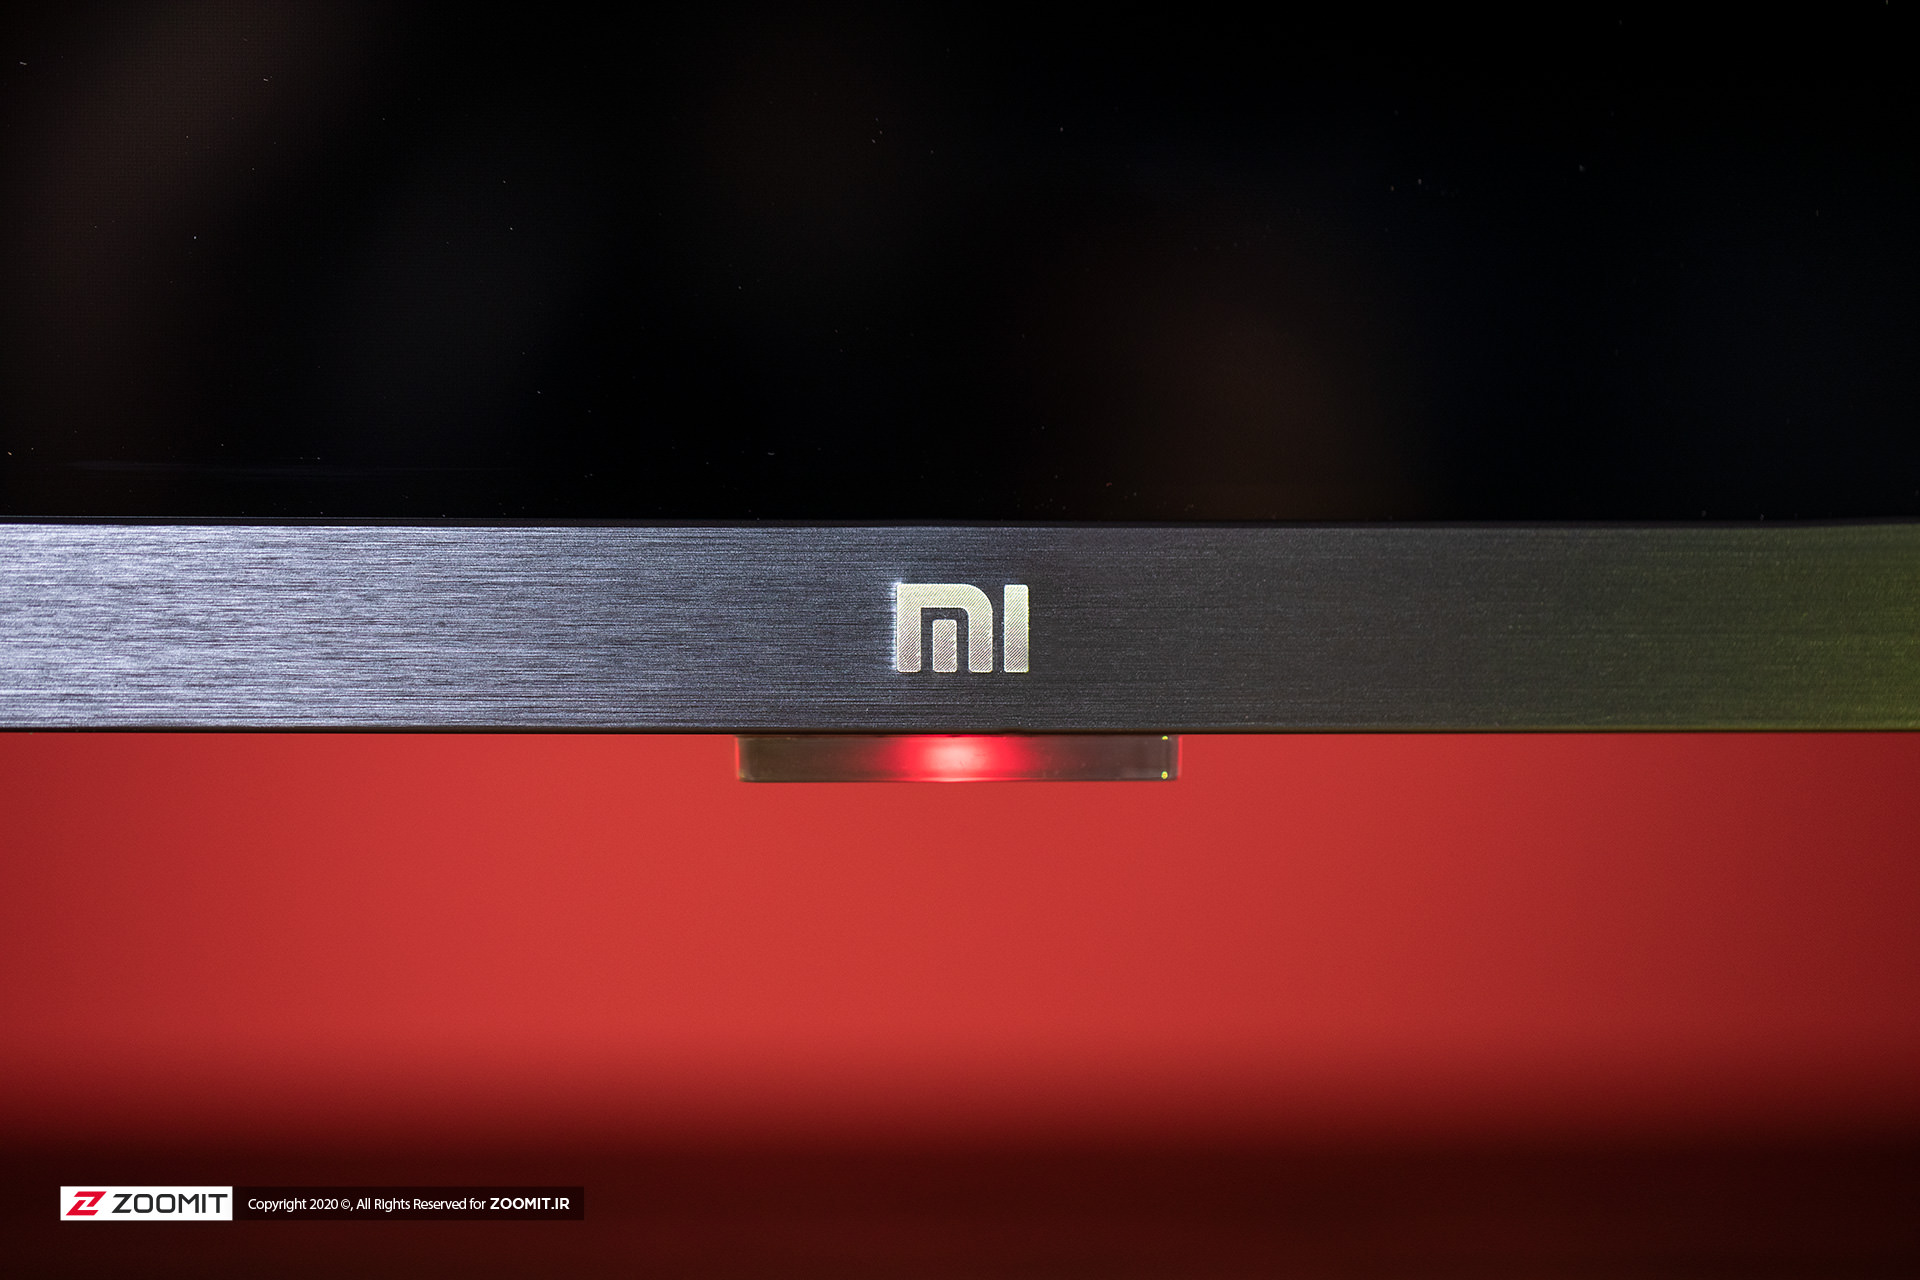 لوگوی Mi و نمای نزدیک از فریم آلومنیومی و برس خورده تلویزیون MI TV  4S شیائومی